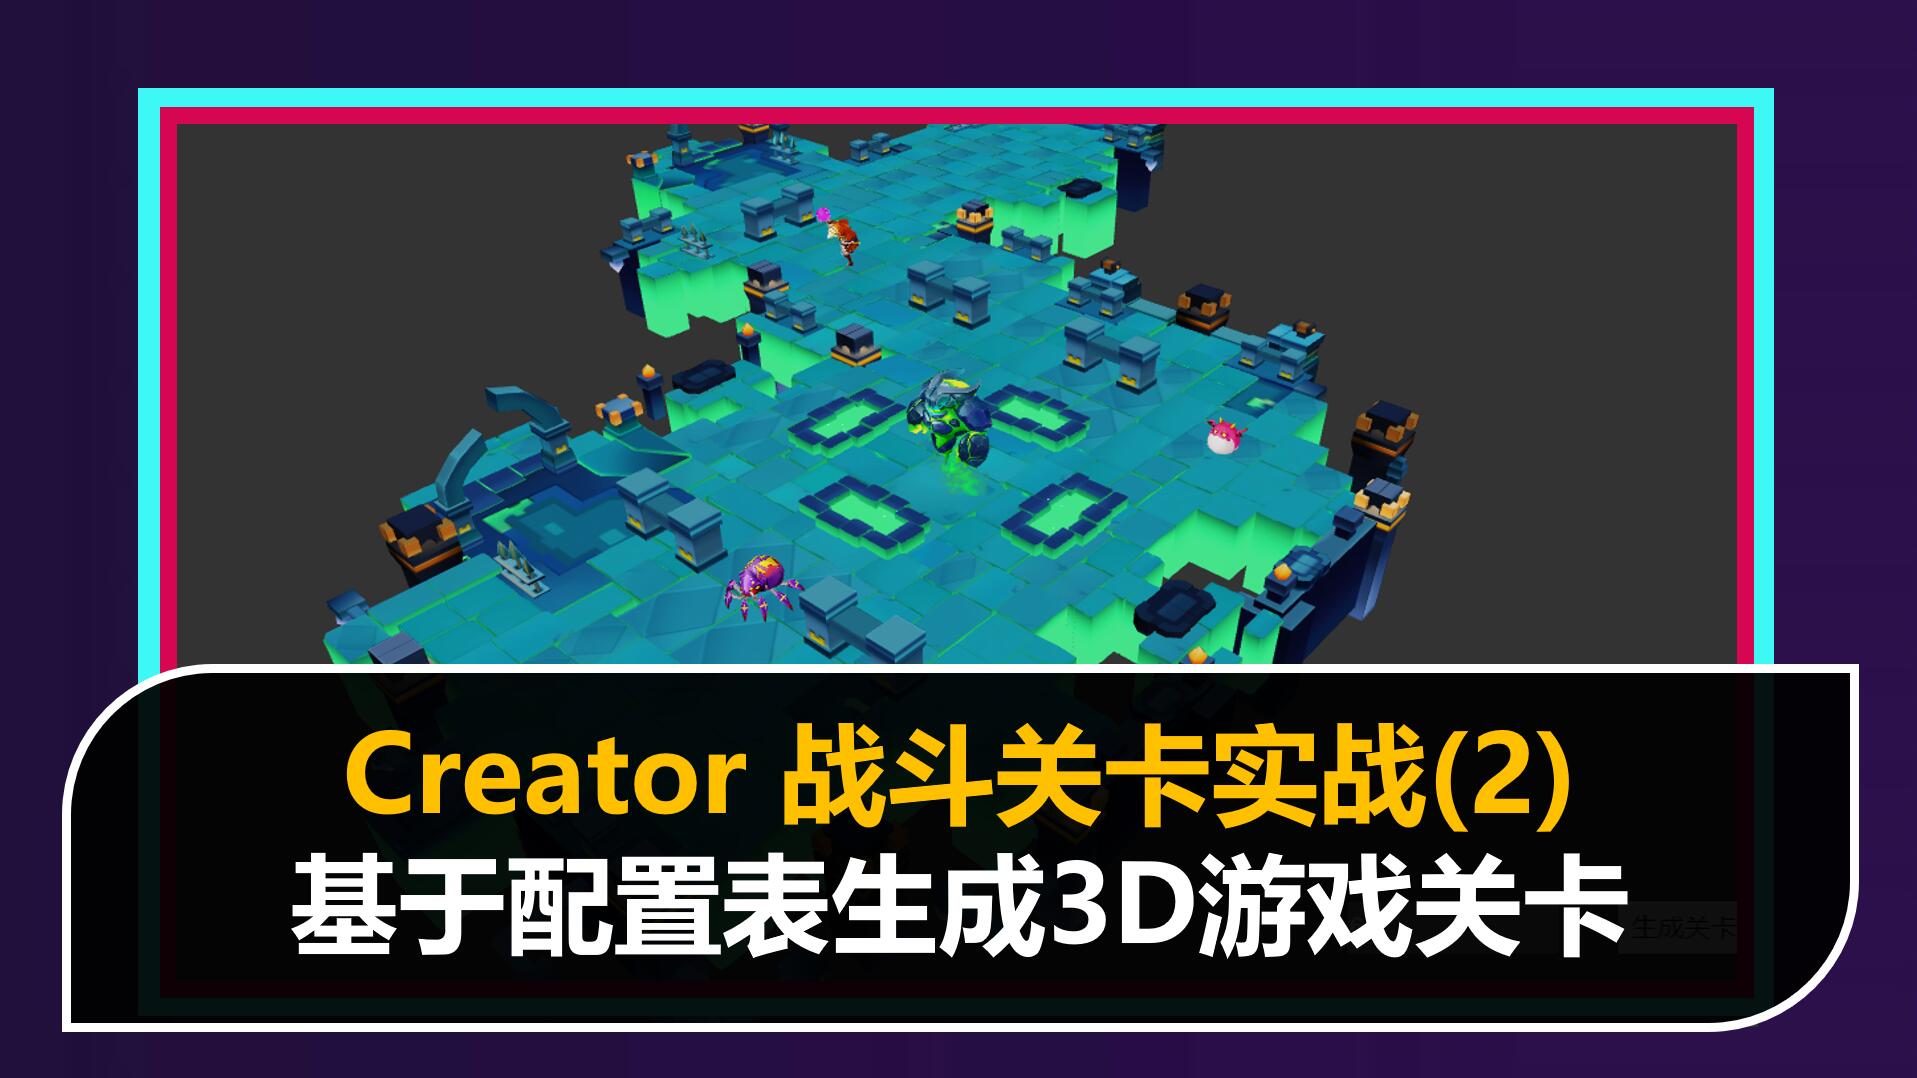 战斗关卡核心技术:基于配置表生成3D游戏关卡